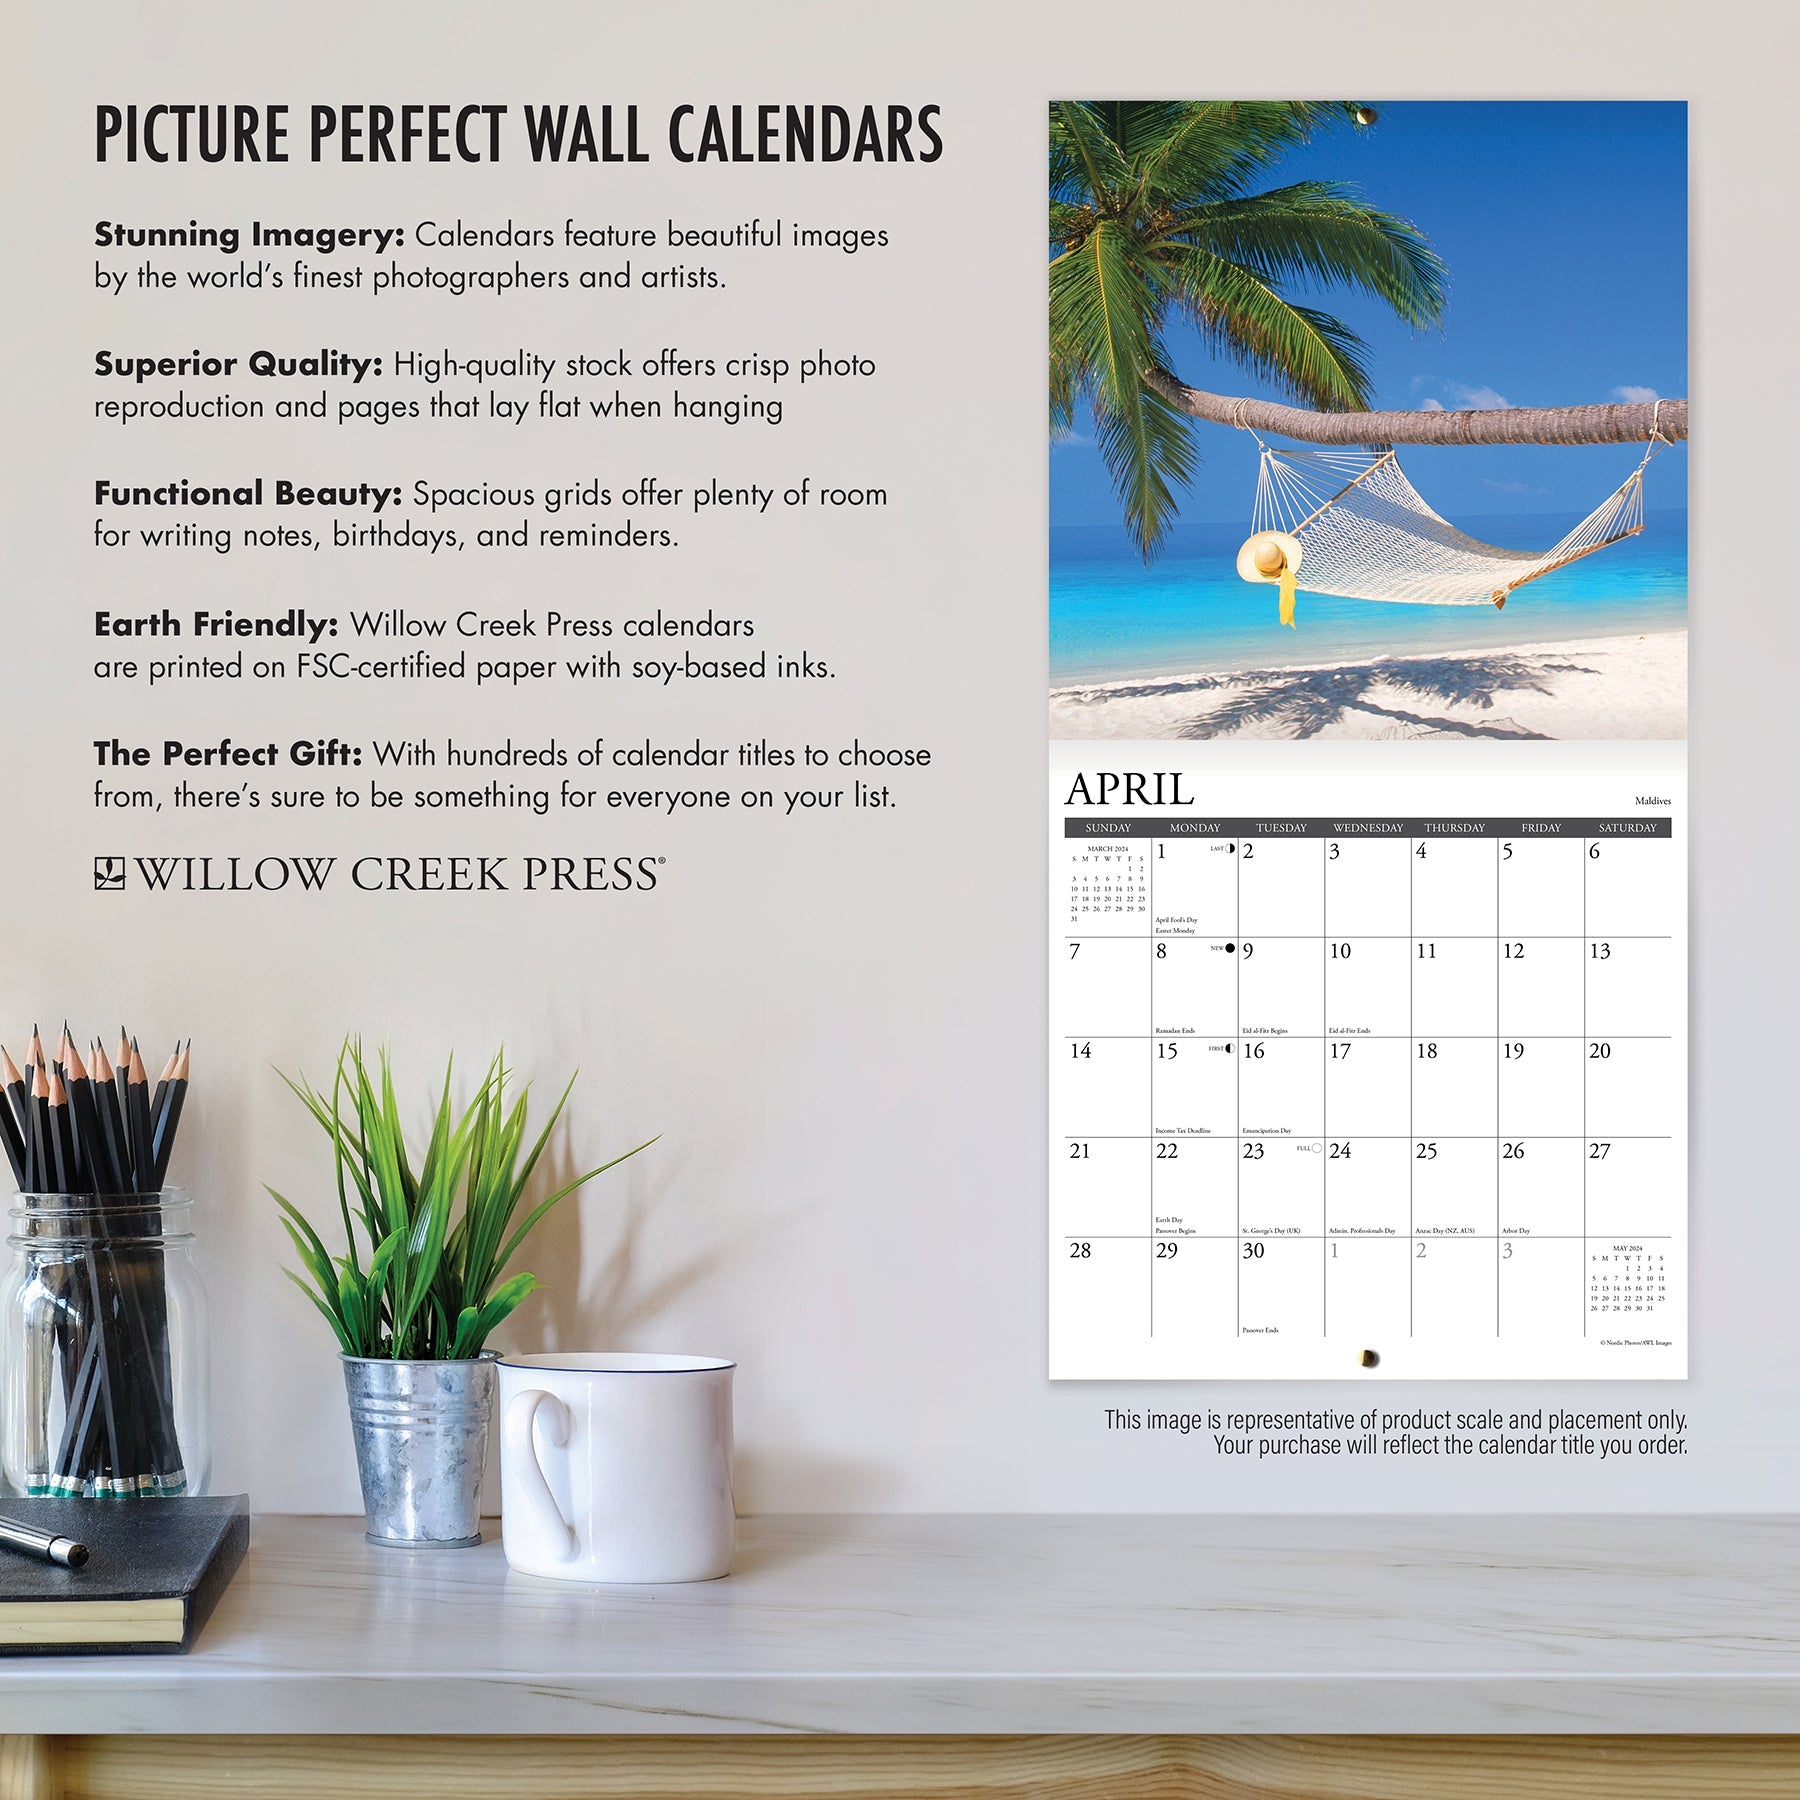 2024 Bird Lovers - Wall Calendar